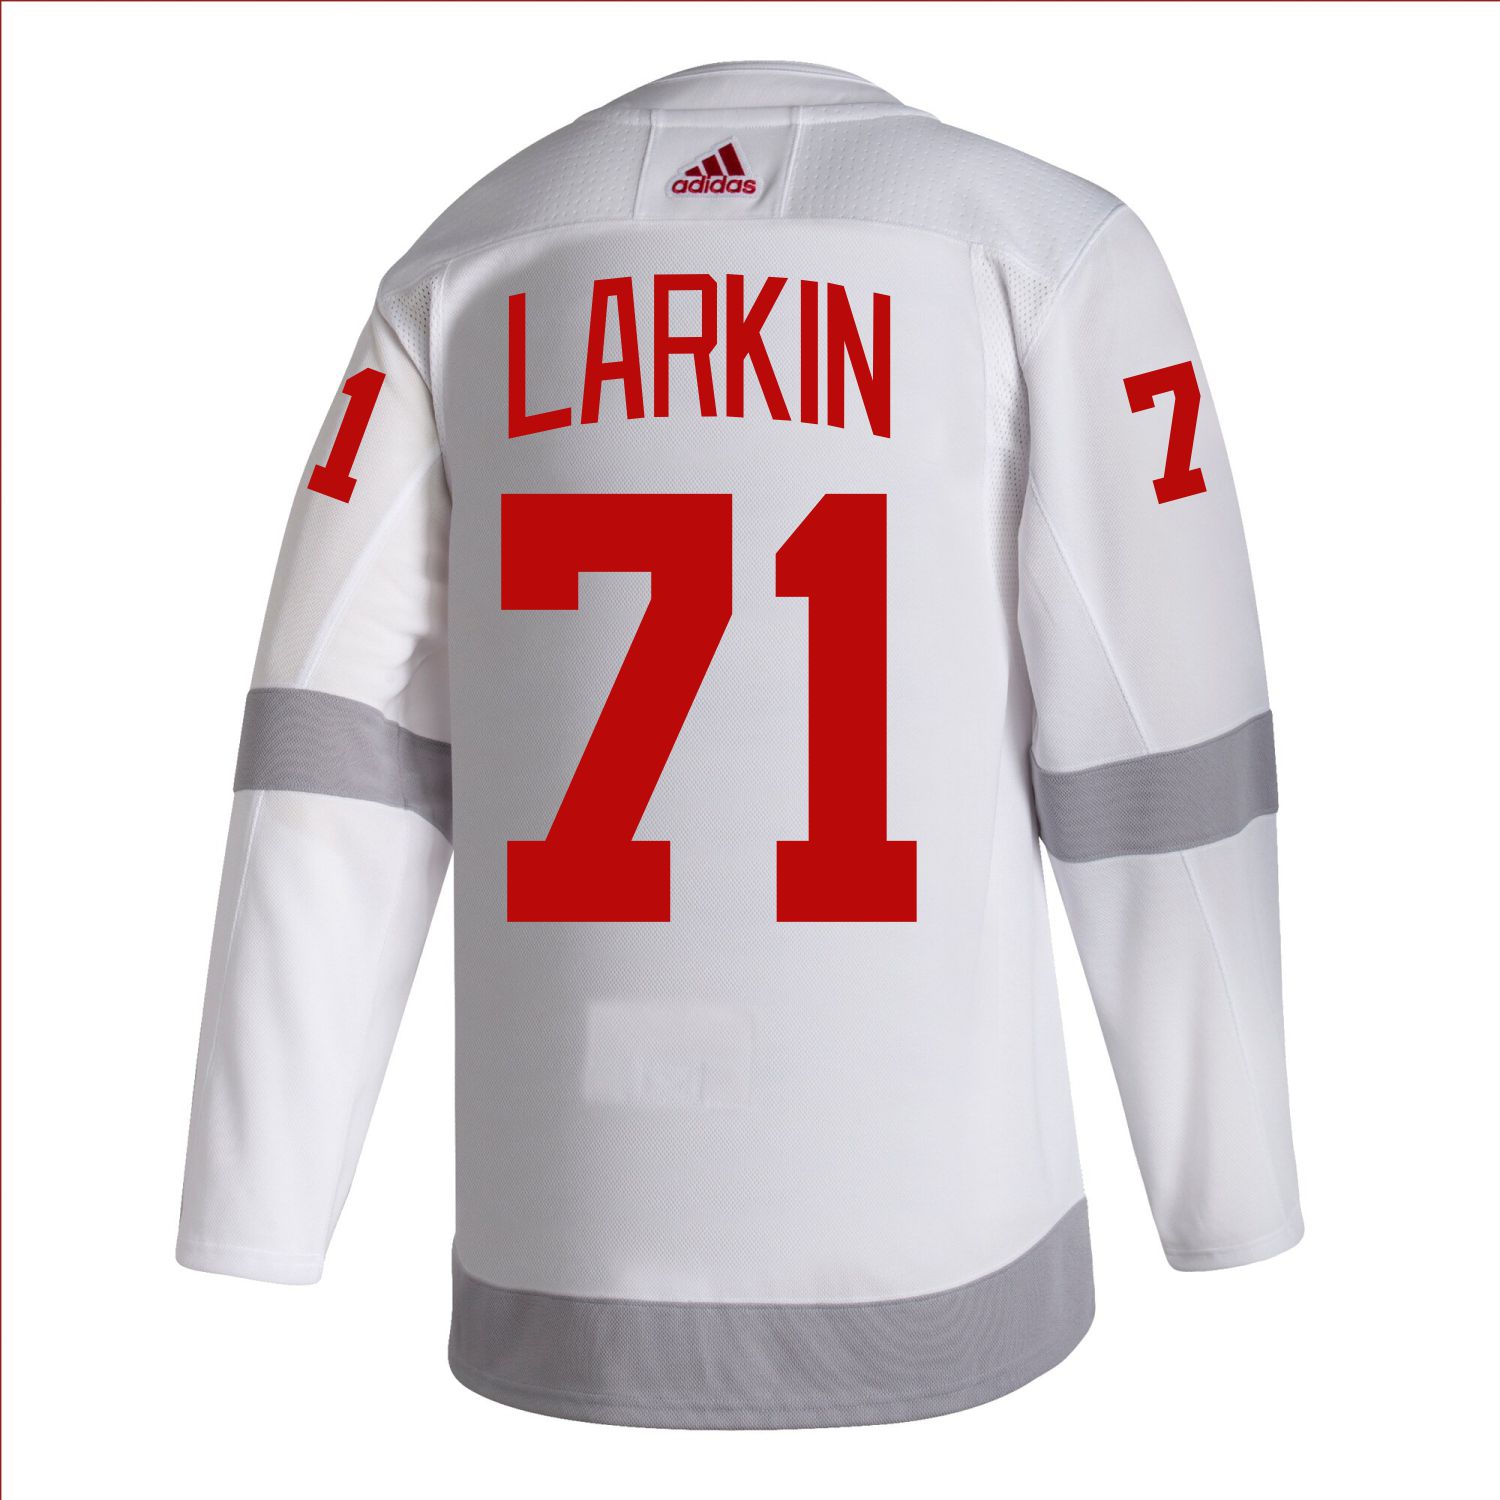 Detroit Red Wings Larkin Replica Reebok Player Jersey